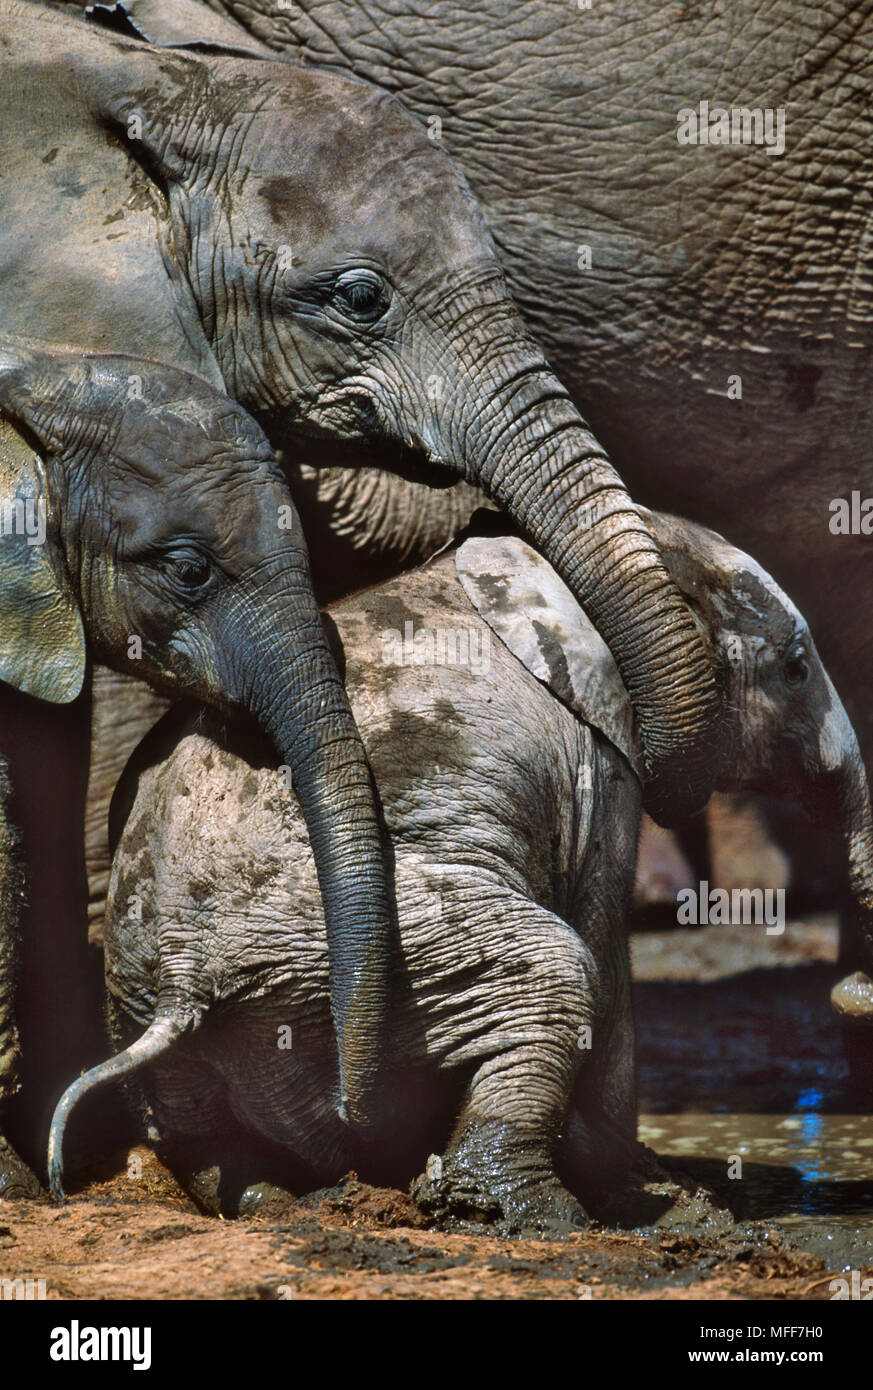 Con el elefante africano Loxodonta africana joven ternero Addo Elephant National Park, Sudáfrica Foto de stock